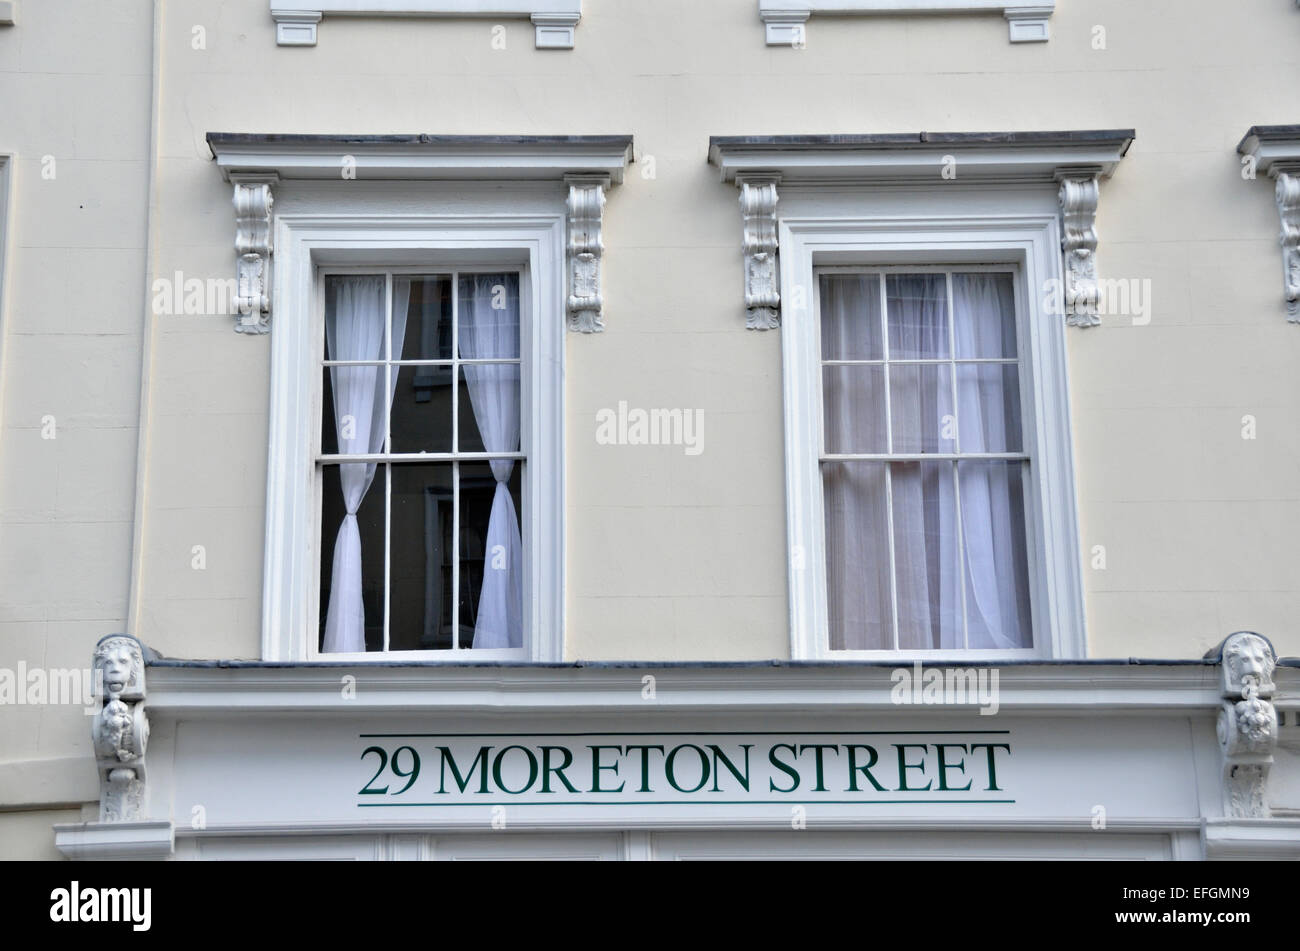 29 Moreton calle signo sobre una fachada de edificio georgiano, Pimlico, Londres, Reino Unido. Foto de stock